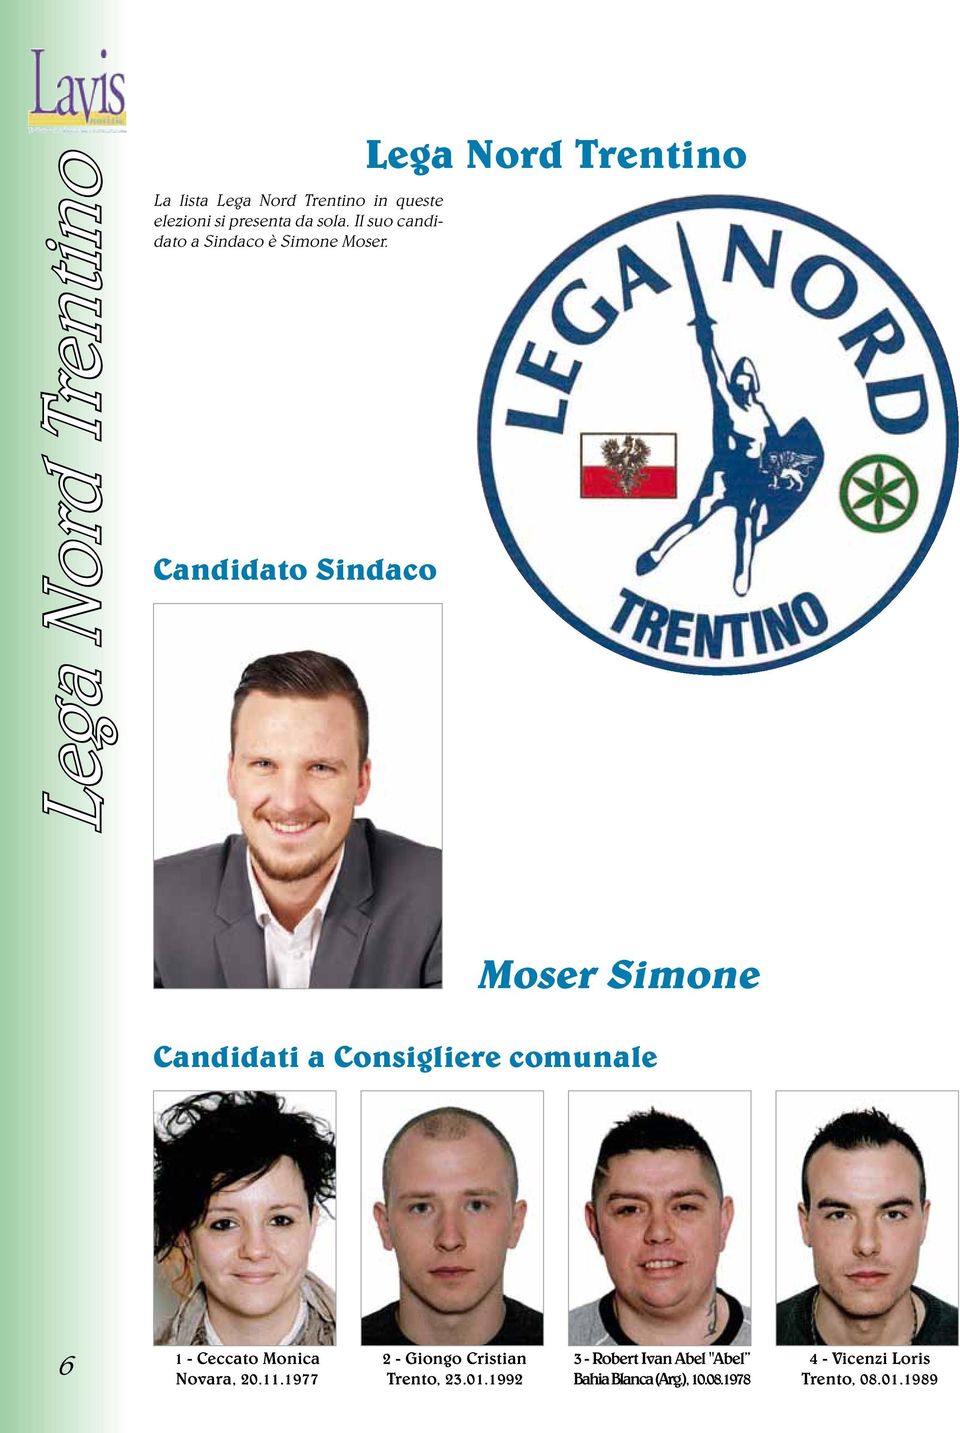 Candidato Sindaco Lega Nord Trentino Moser Simone Candidati a Consigliere comunale 6 1 - Ceccato